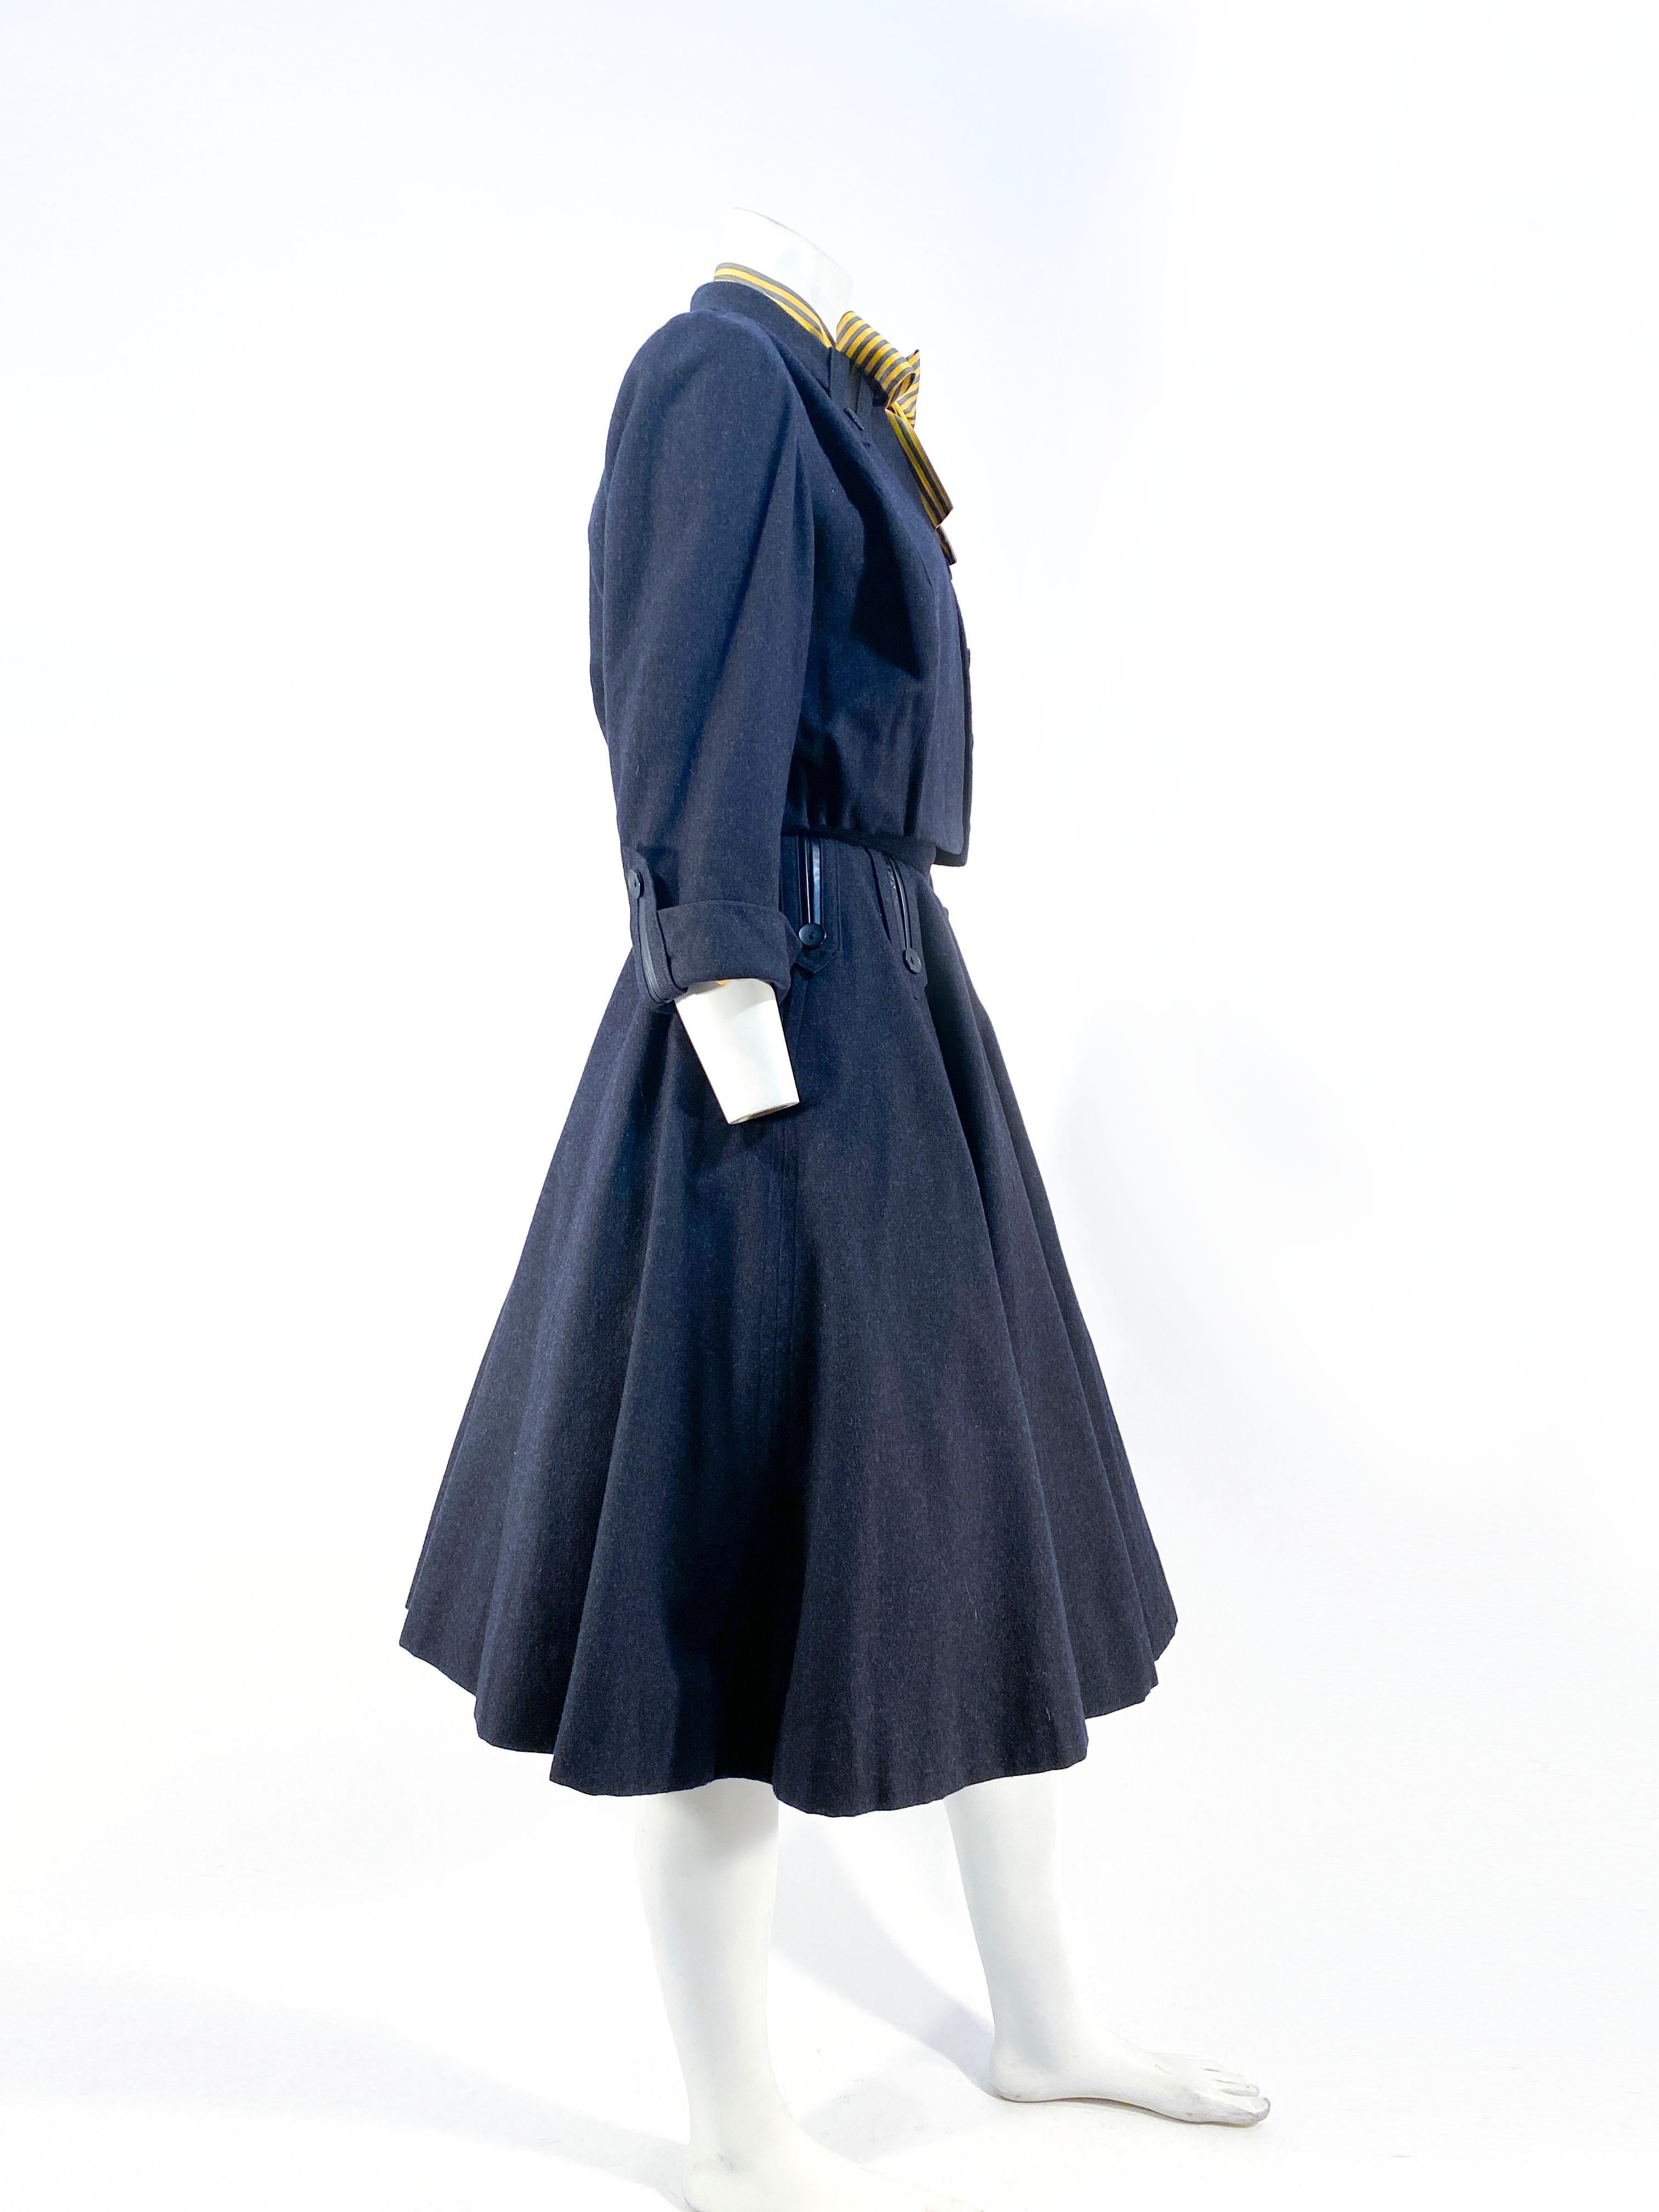 ensemble trois pièces en cachemire/laine mélangée gris des années 1950, comprenant la jupe circulaire complète à pans coupés en cuir et laine avec boutons. Le blouson a des manches trois-quarts avec des accents assortis le long des poignets et du